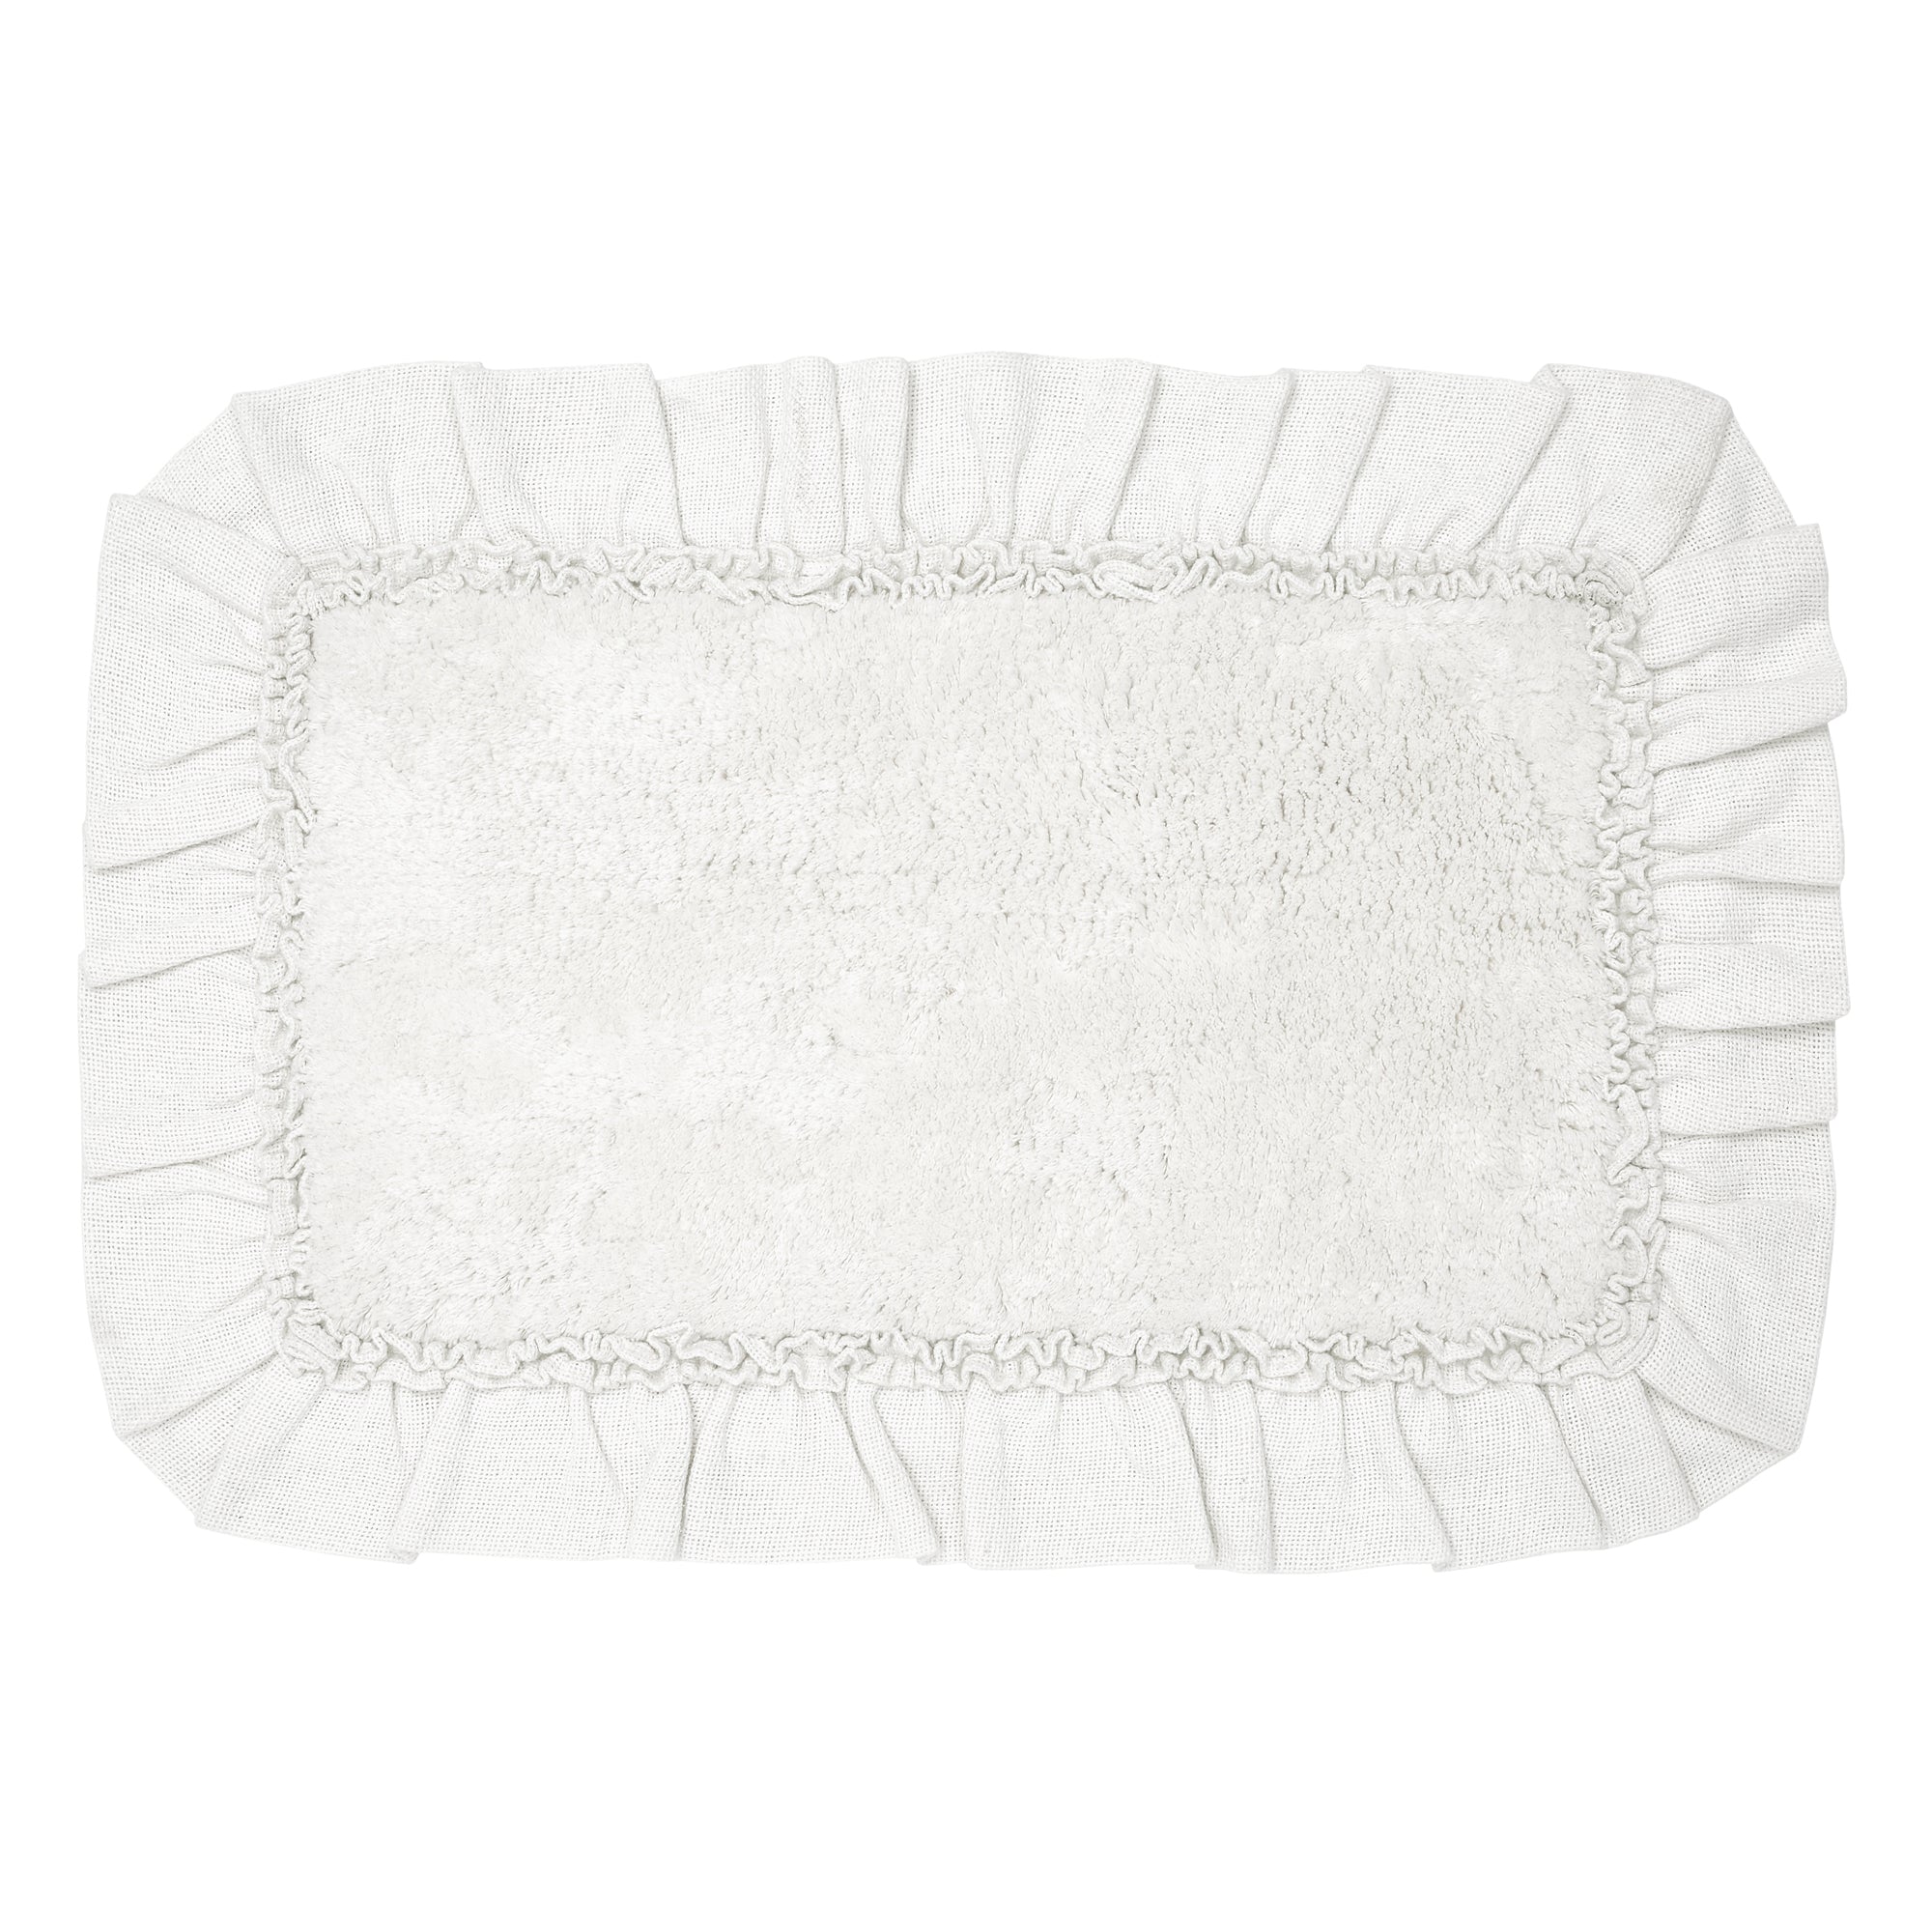 Burlap Antique White Bathmat 20x30